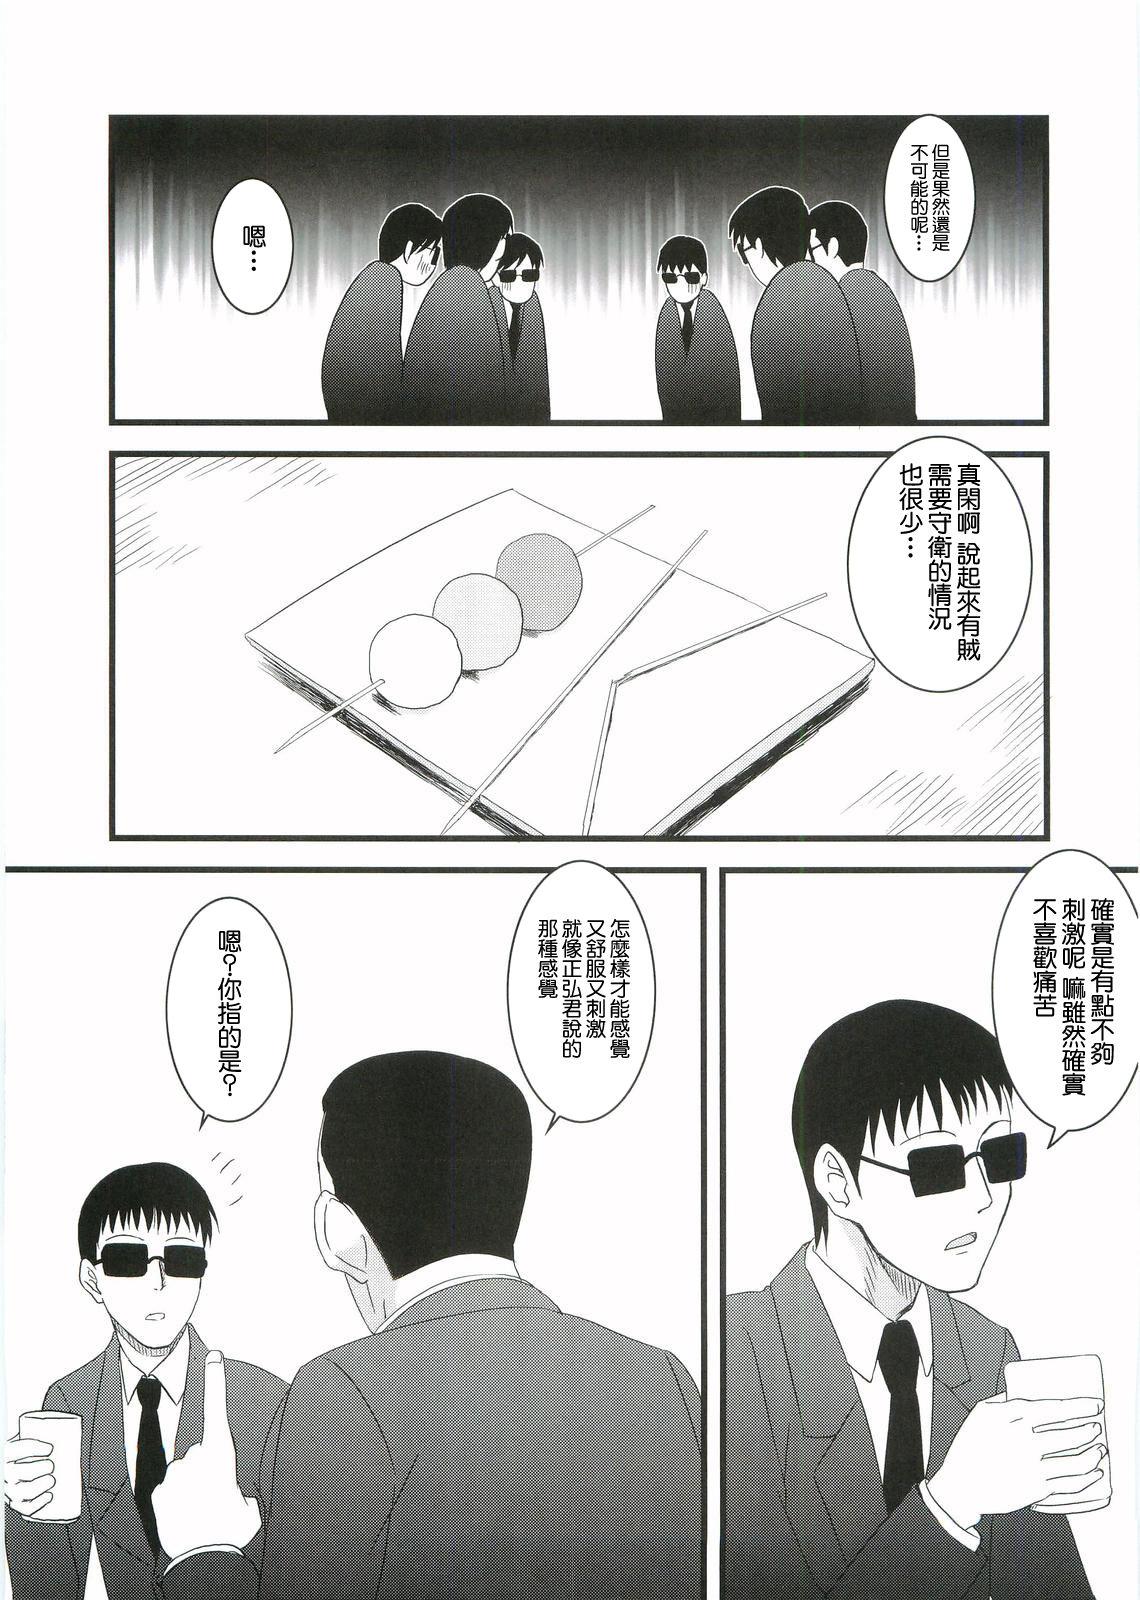 Petite Teen Kouhukuya no Ehon Gokujo 2 - Gokujou seitokai | best student council Curious - Page 8